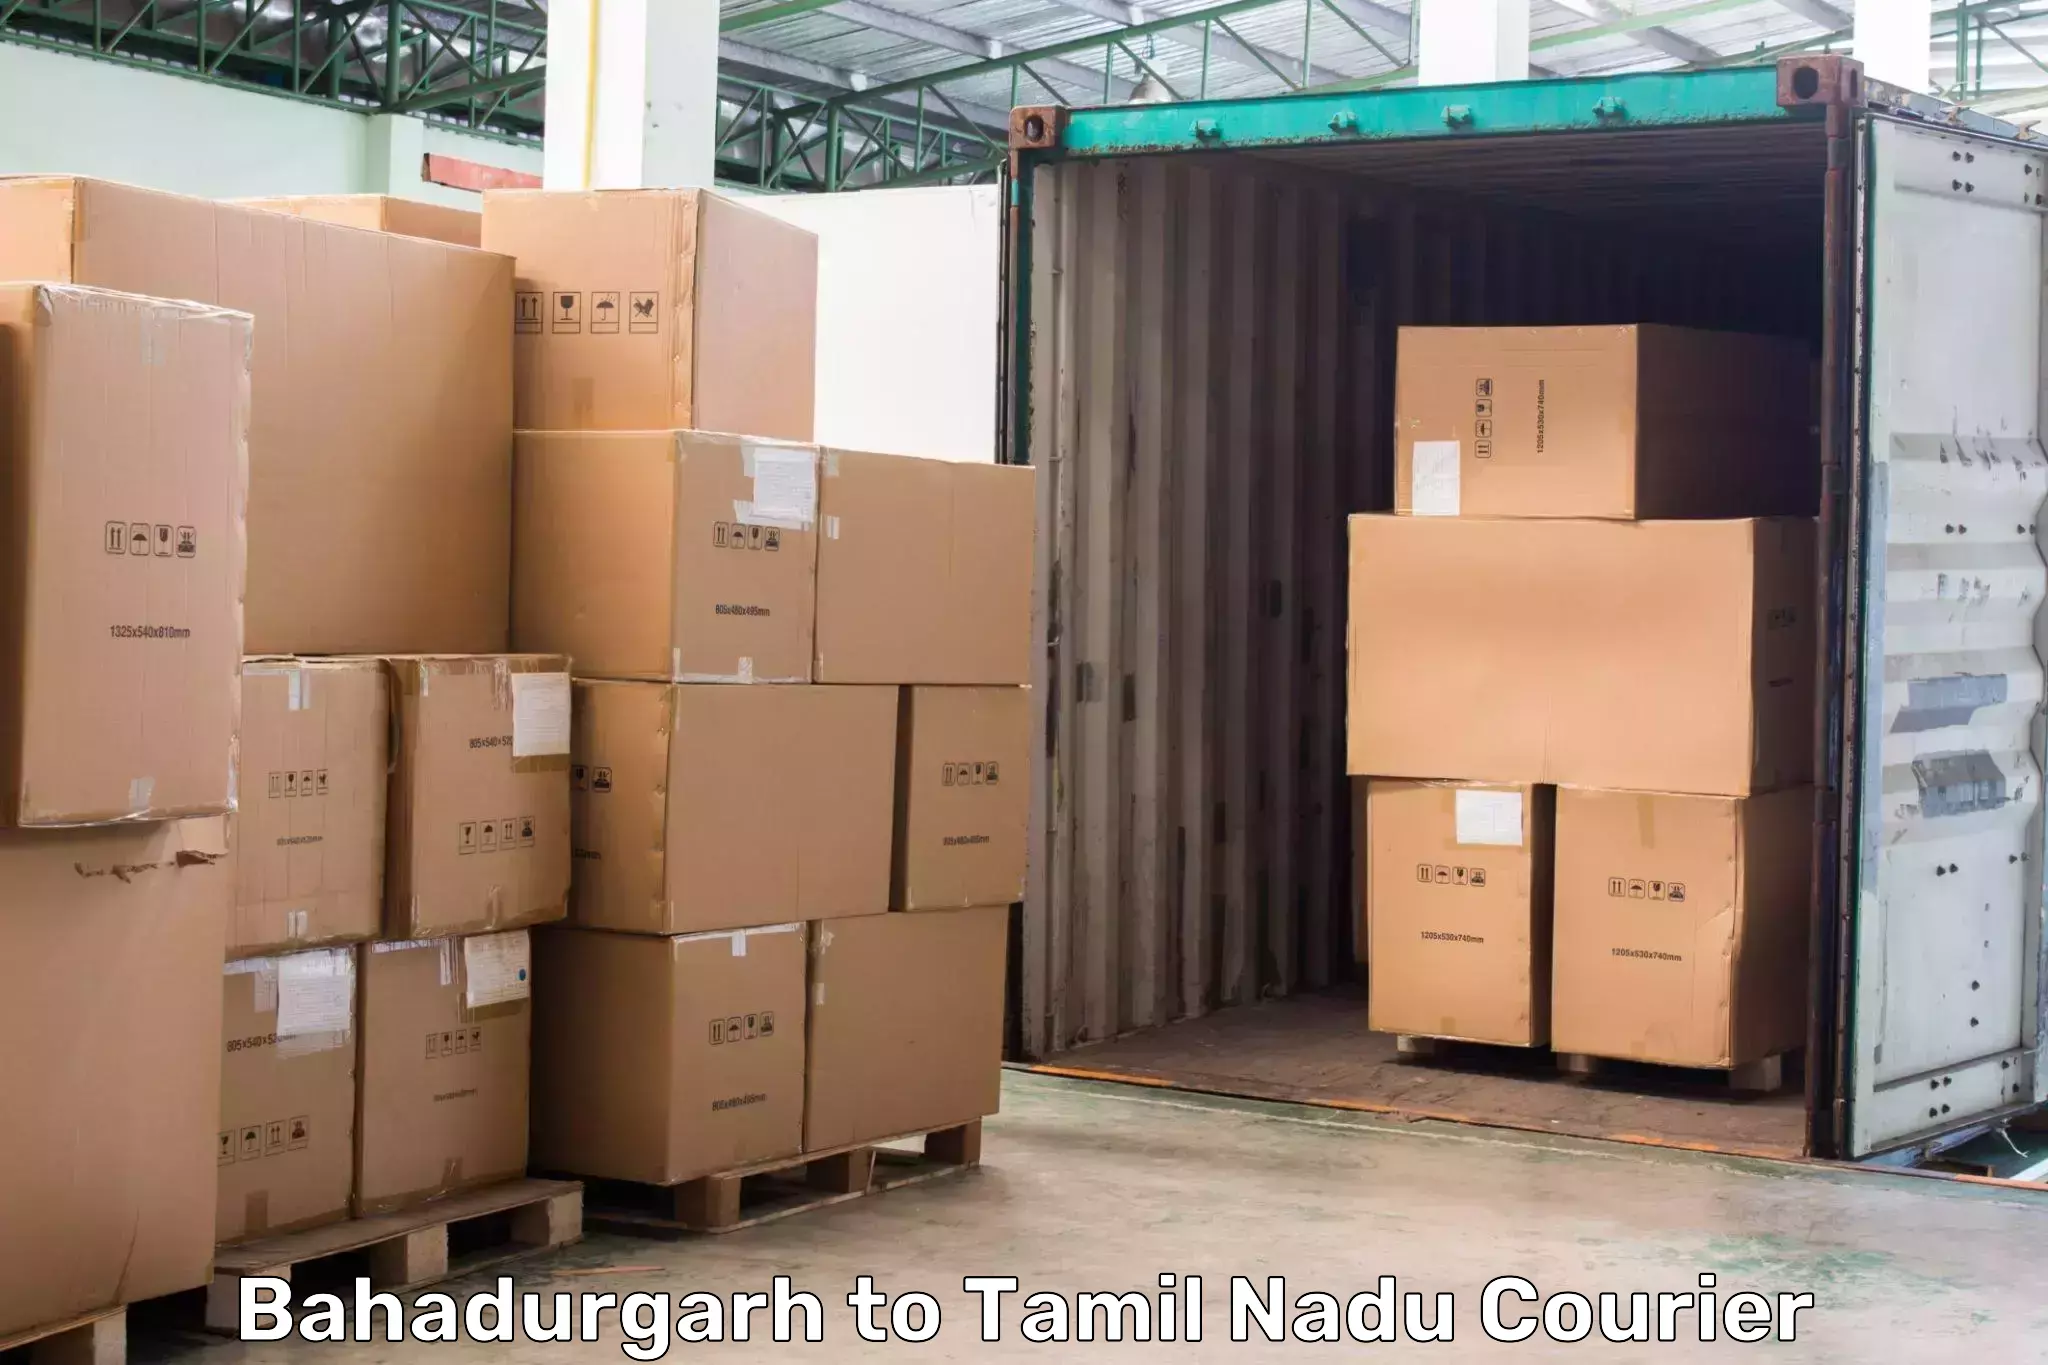 High-capacity shipping options Bahadurgarh to Vedasandur